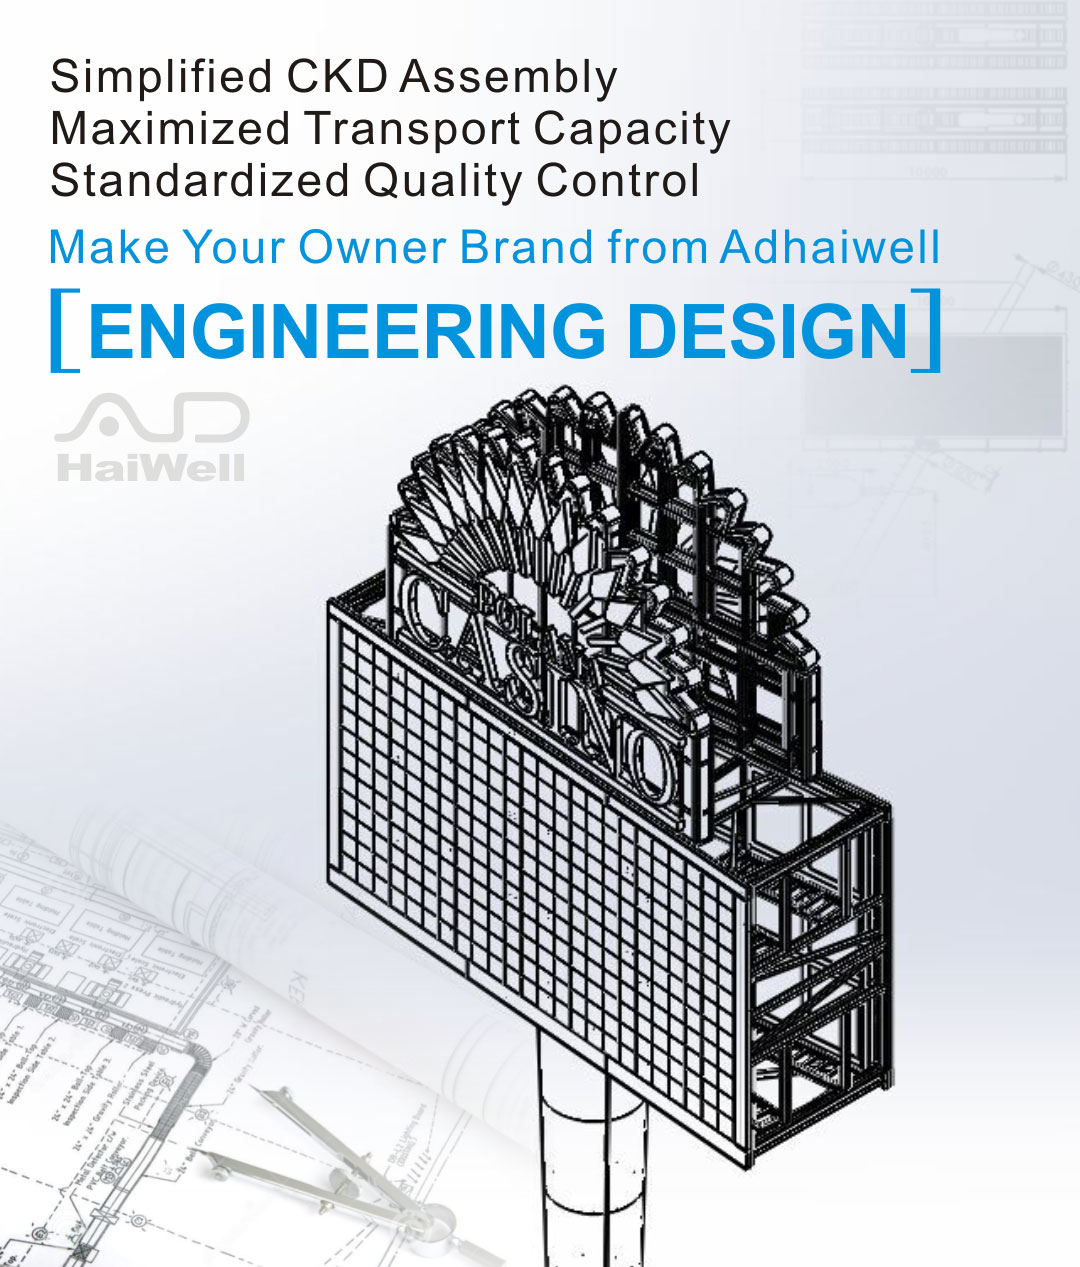 Diseño de ingeniería gratuito de publicidad Adhaiwell